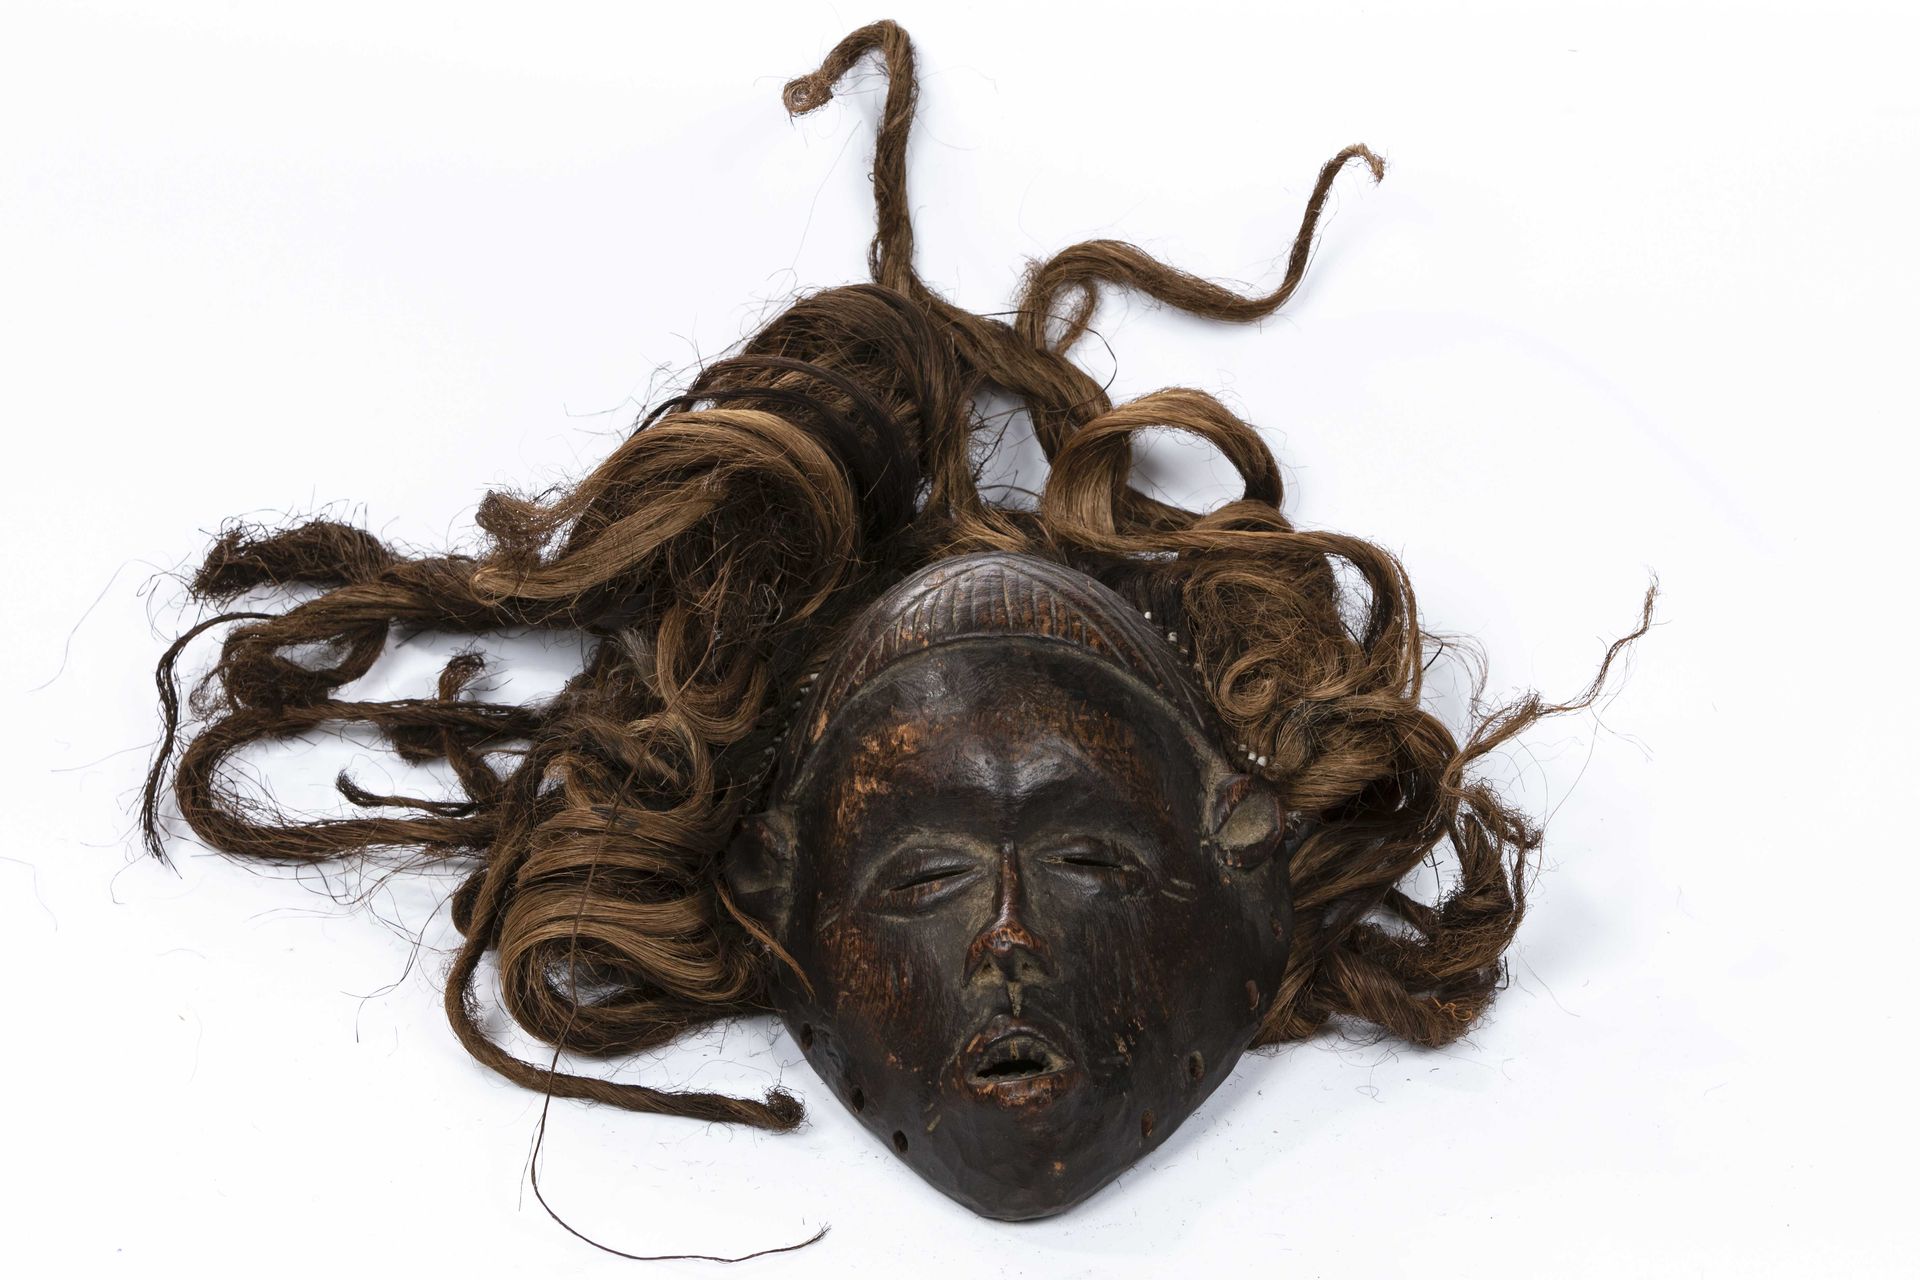 Null 当代非洲面具
木材、毛发纤维、金属
高：约22厘米
面具上有棕色的铜锈，显示出一张小脸，张着嘴，似乎在说话。凹陷的眼睛在浮雕中凸显出小的目光。额头是圆&hellip;